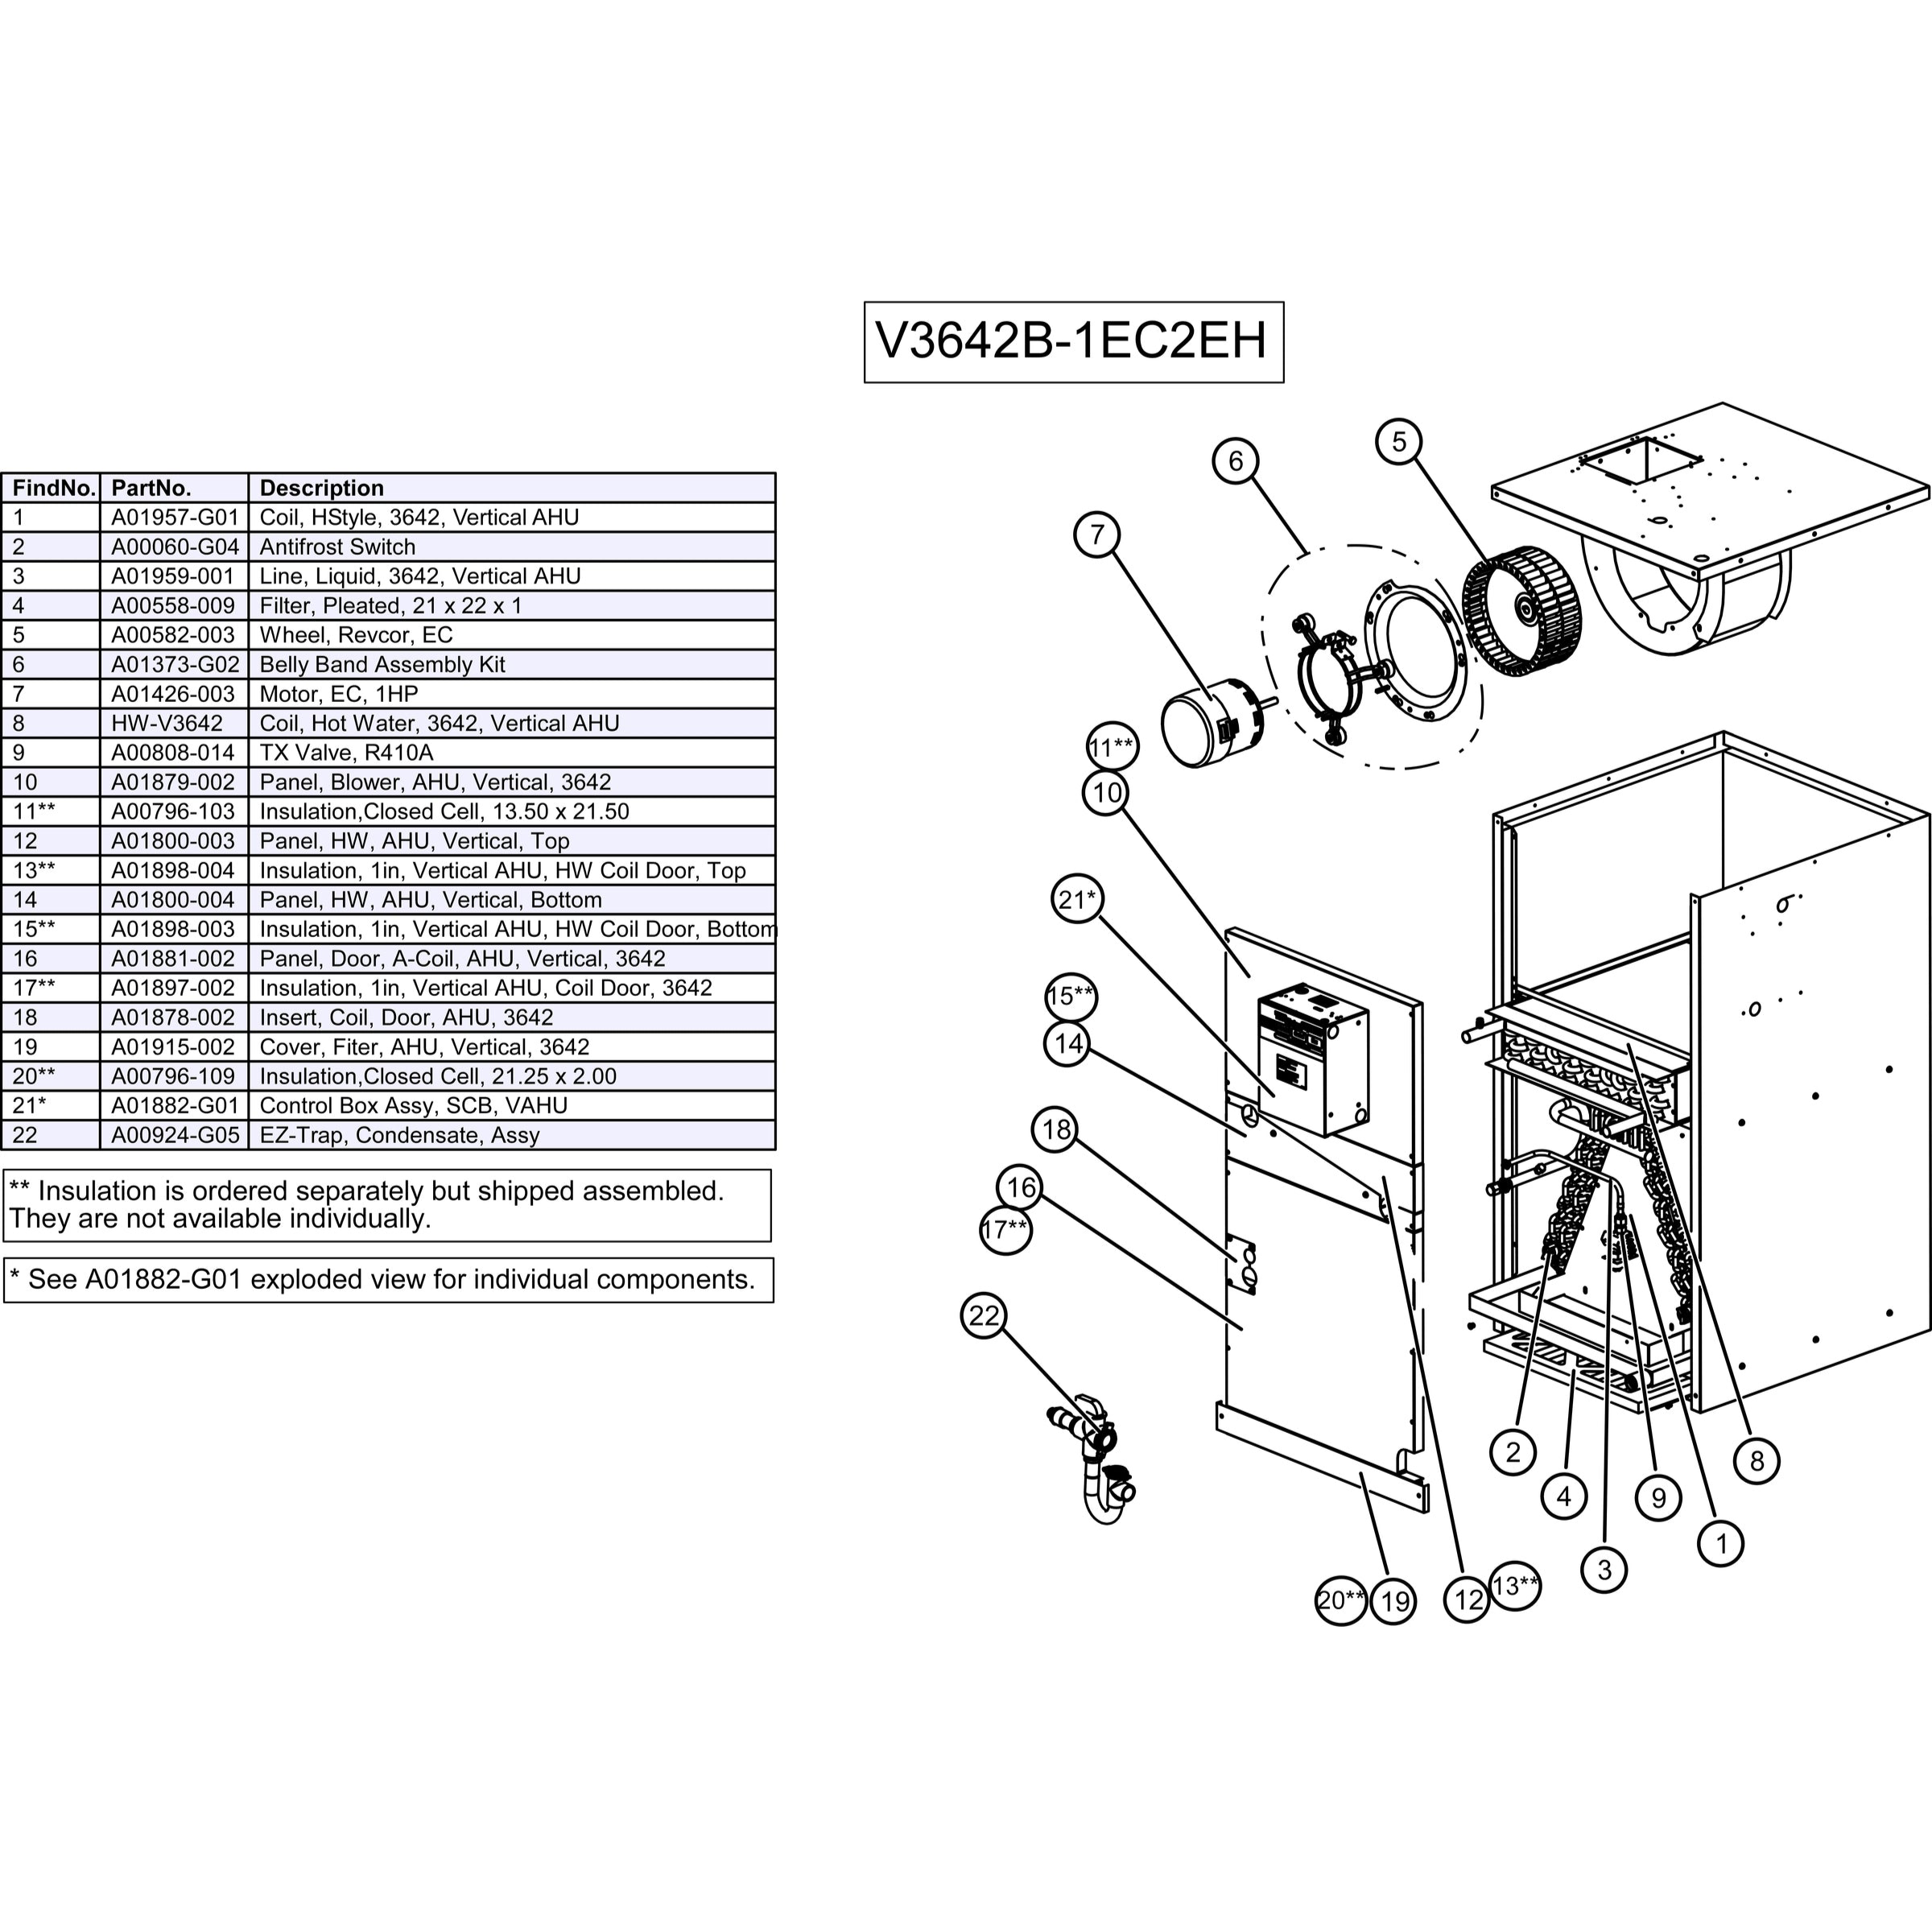 V3642B-1EC2EH Unico V Series Vertical Air Handler Unit, E Coil, HWC, 3642 Model 3.0 - 3.5 Ton, 42,000 BTU/hr, 208/230 Variable Speed, AC/Heat Pump Coil, 4-Row with R410A TXV, with Hot Water Coil